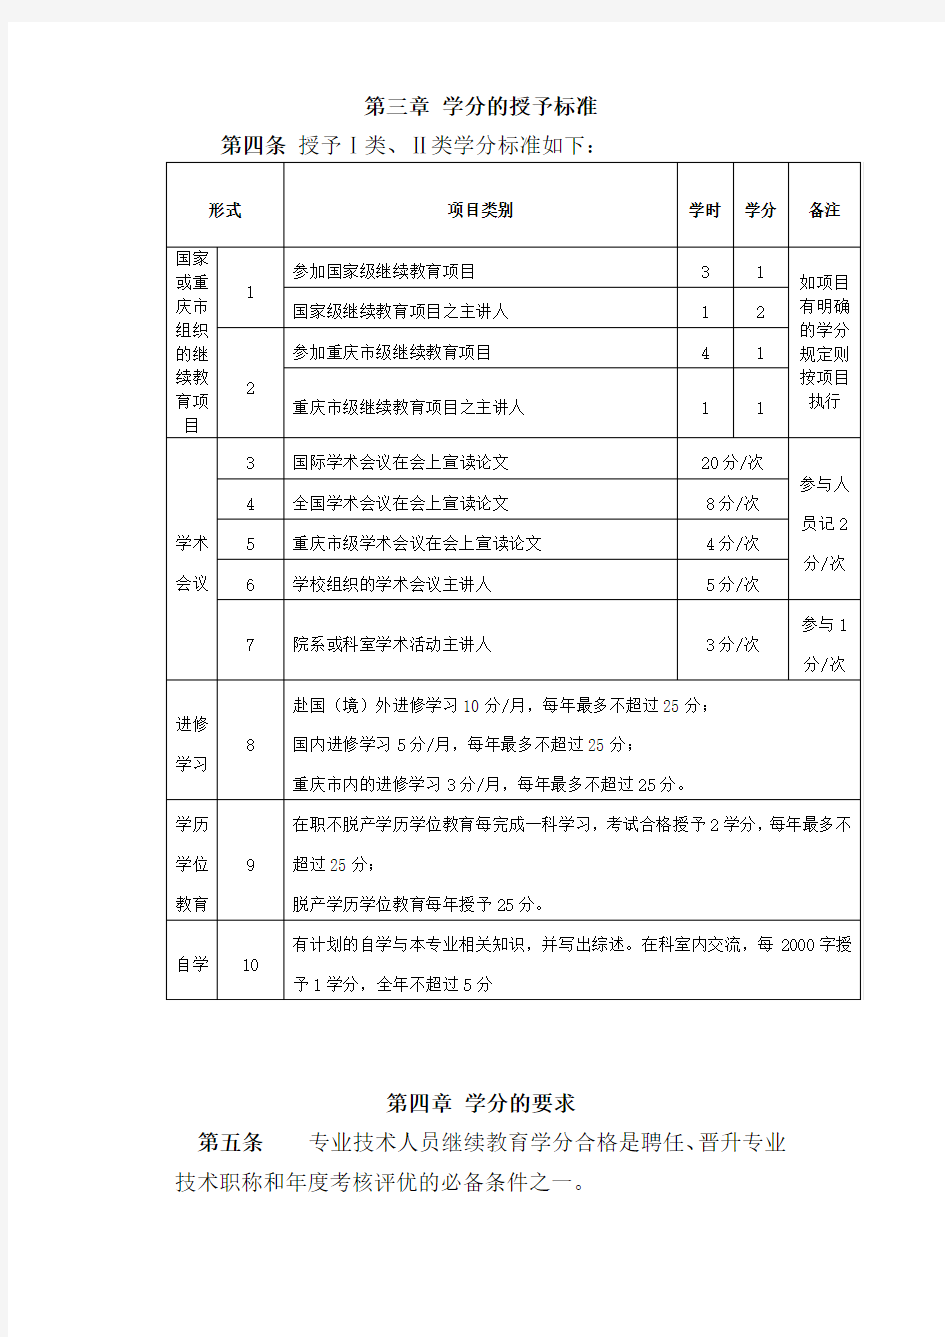 重庆医科大学继续教育学分管理暂行办法